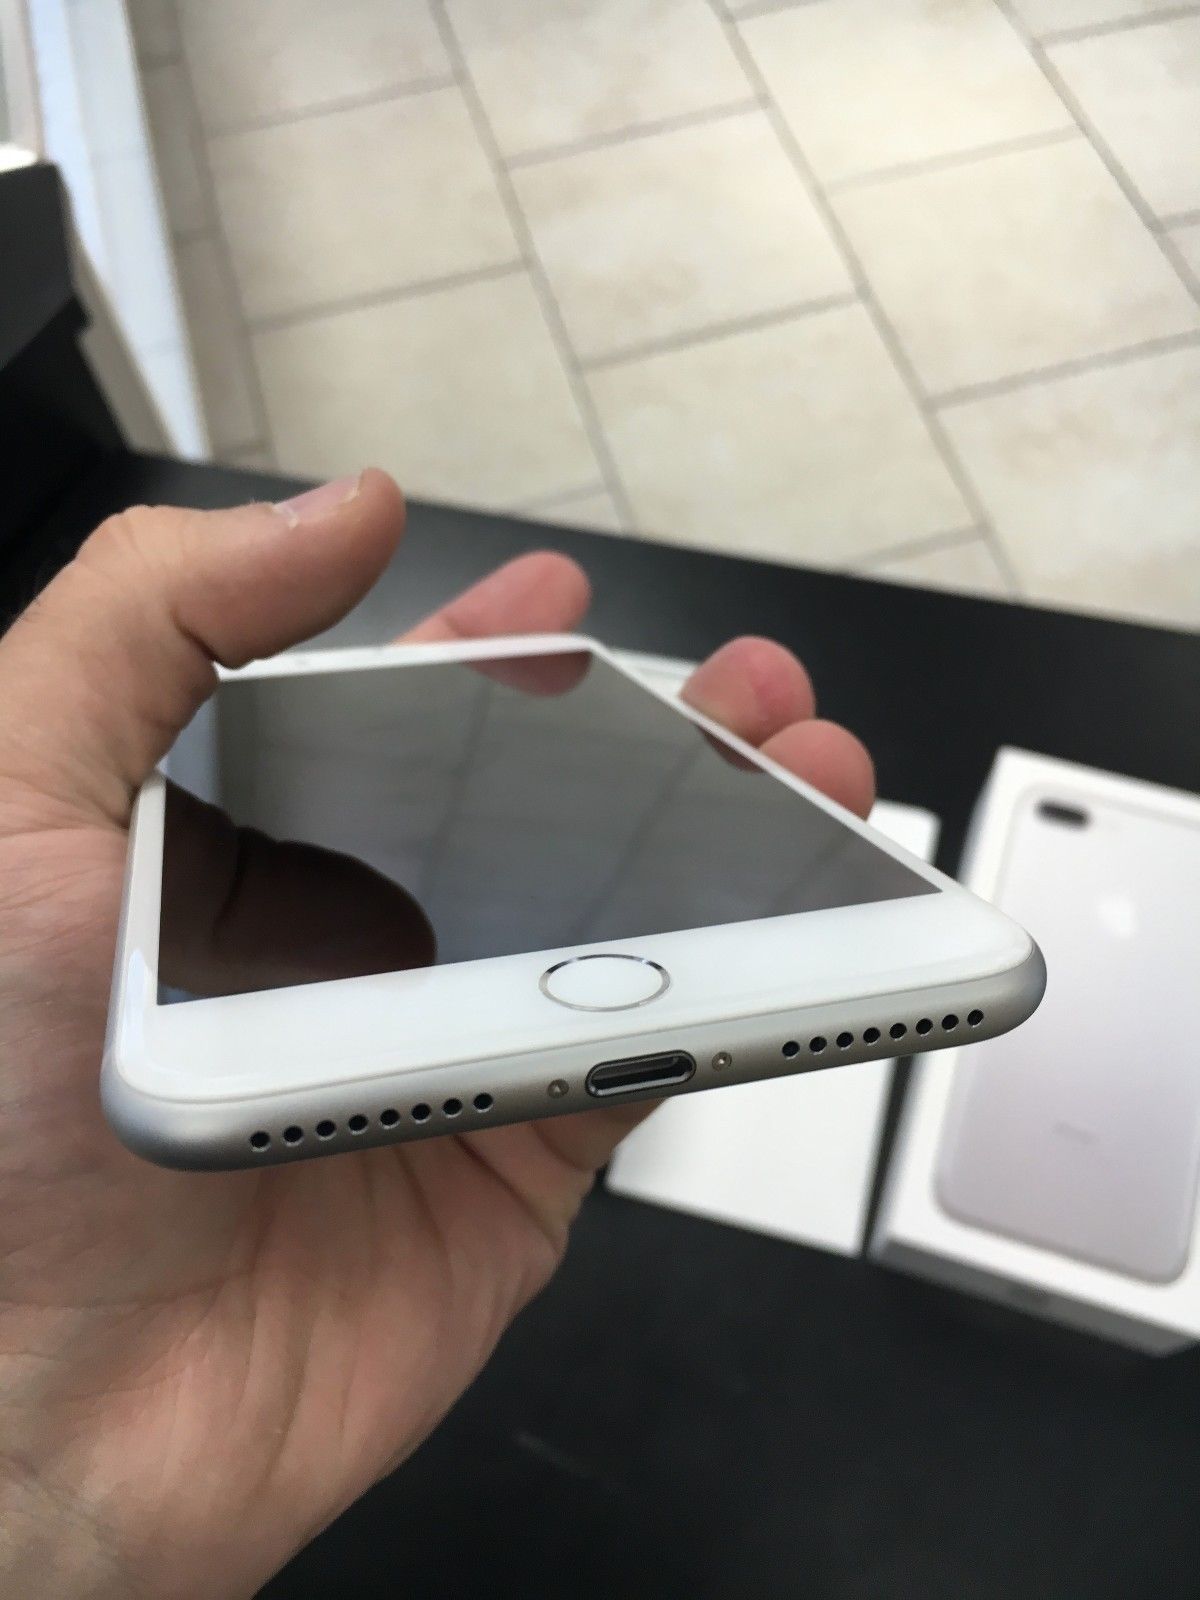 Apple iPhone 7 Plus, 32 Gb, Rose Gold розовое золото - Мобильные телефоны,аксессуары